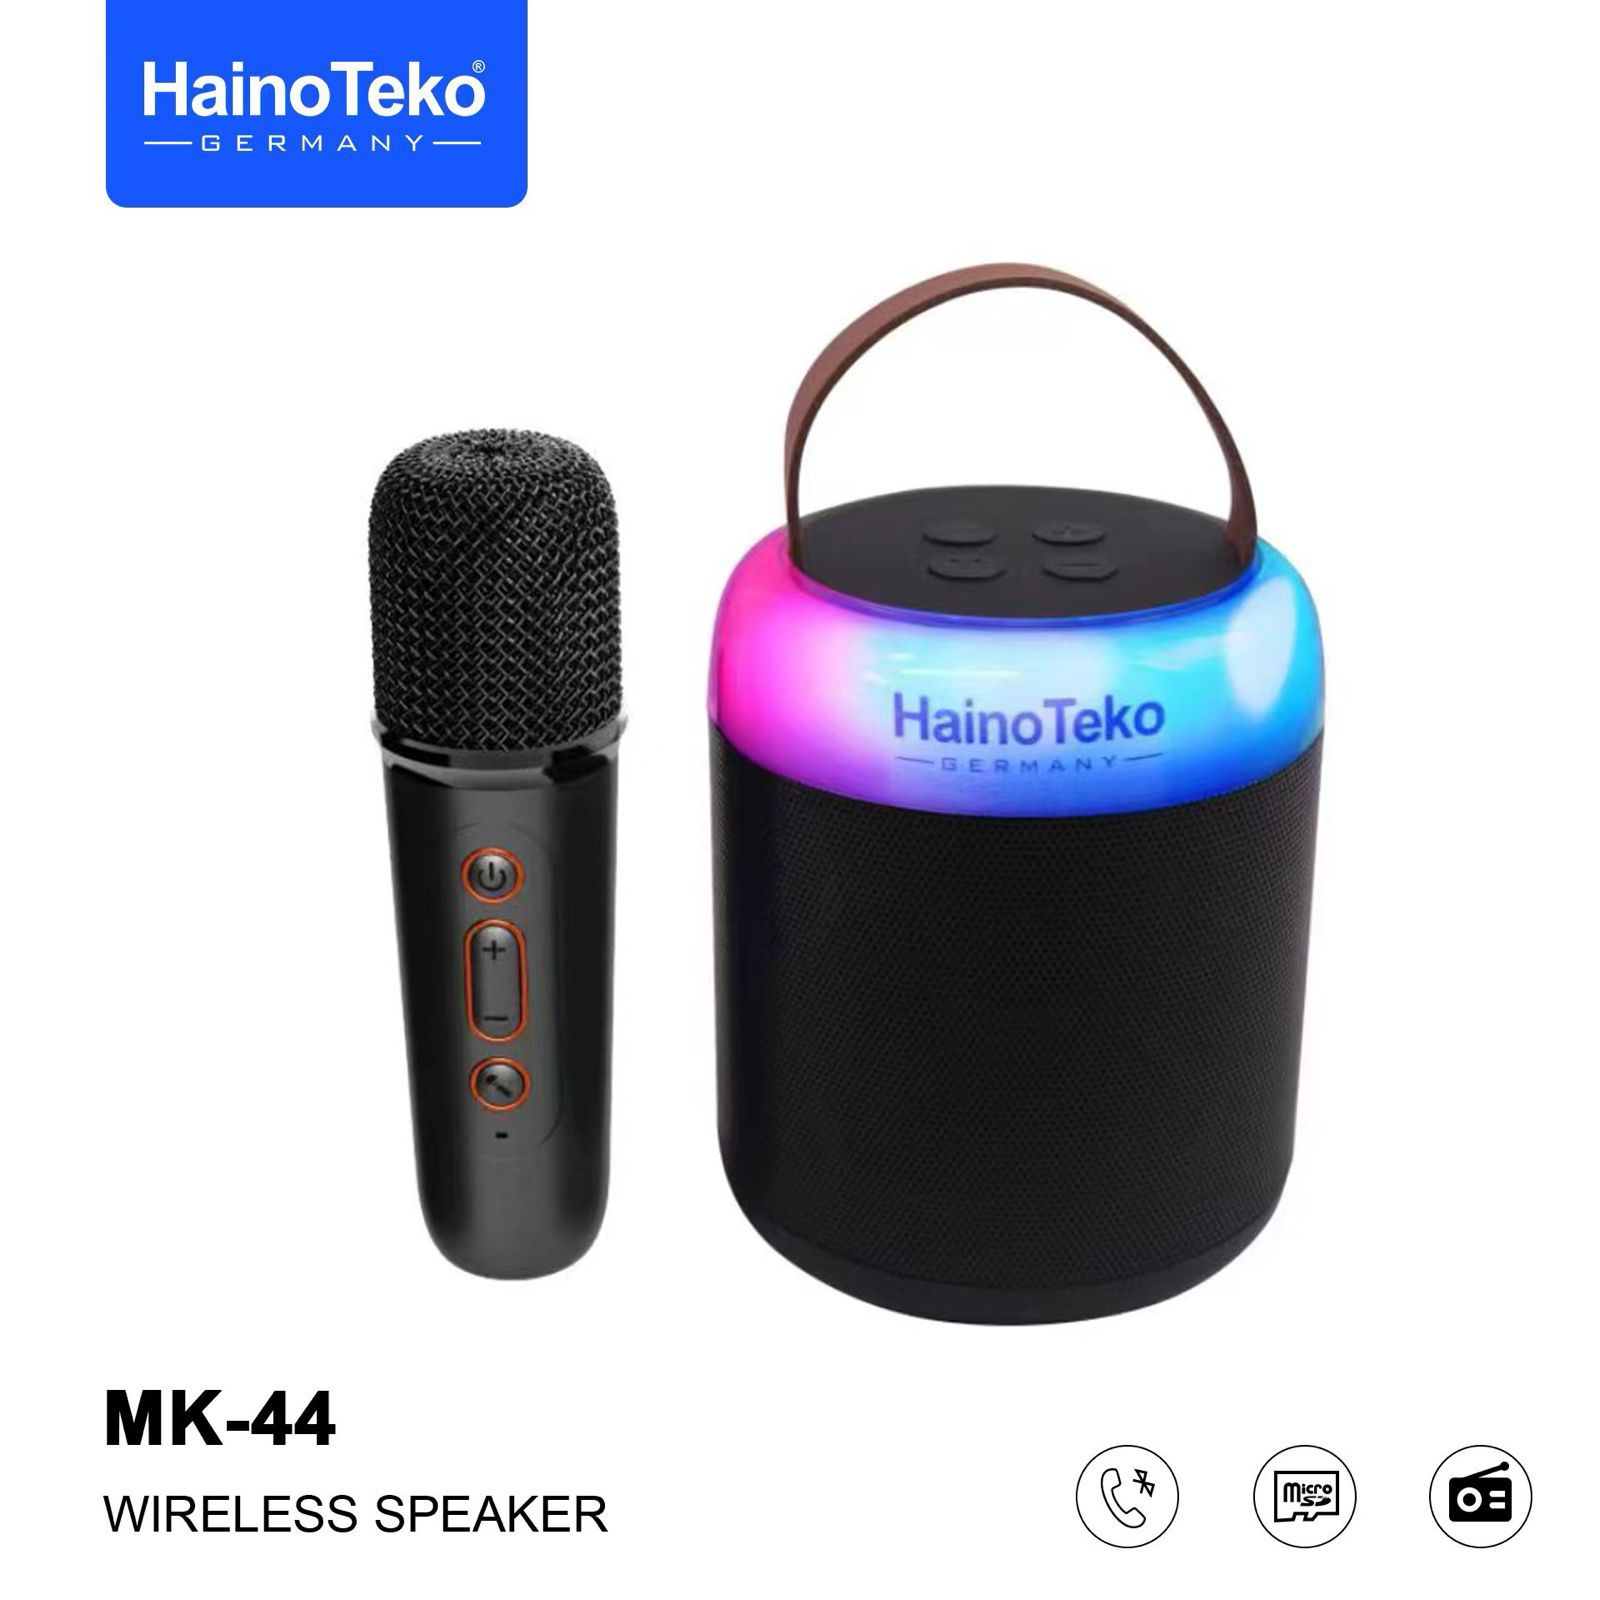 اسپیکر بلوتوثی قابل حمل Haino Teko مدل MK 44 به همراه میکروفون